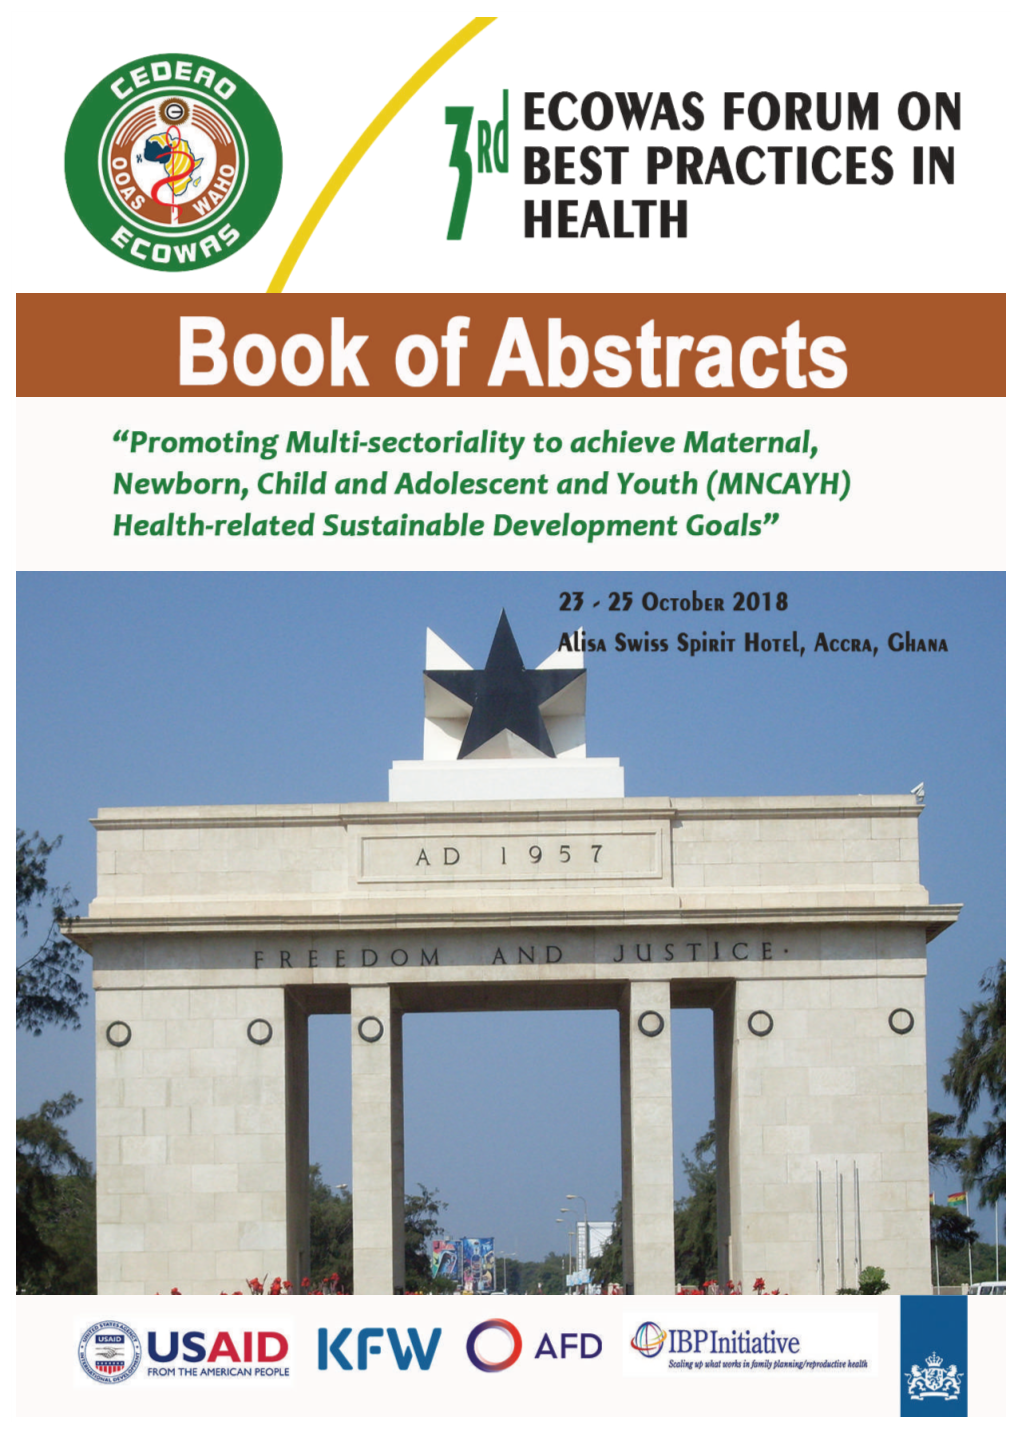 3Rd ECOWAS Forum on Best Health Practices, Accra-Ghana, 23-25 October 2018